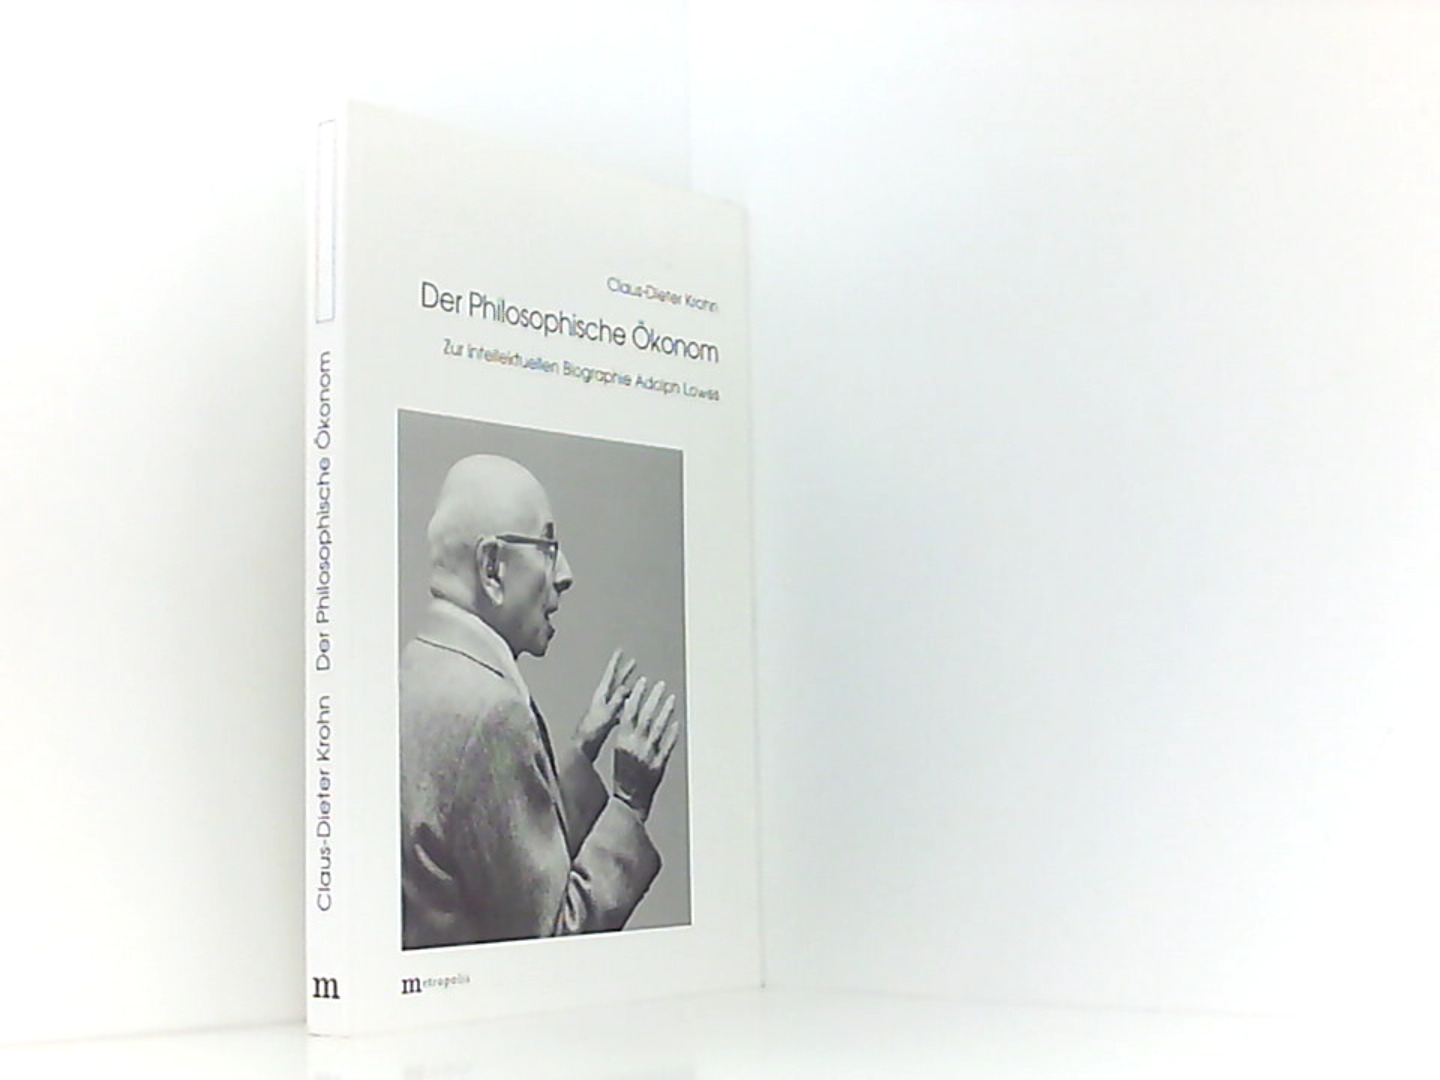 Der philosophische Ökonom: Zur intellektuellen Biographie Adolph Lowes - Krohn Claus, D